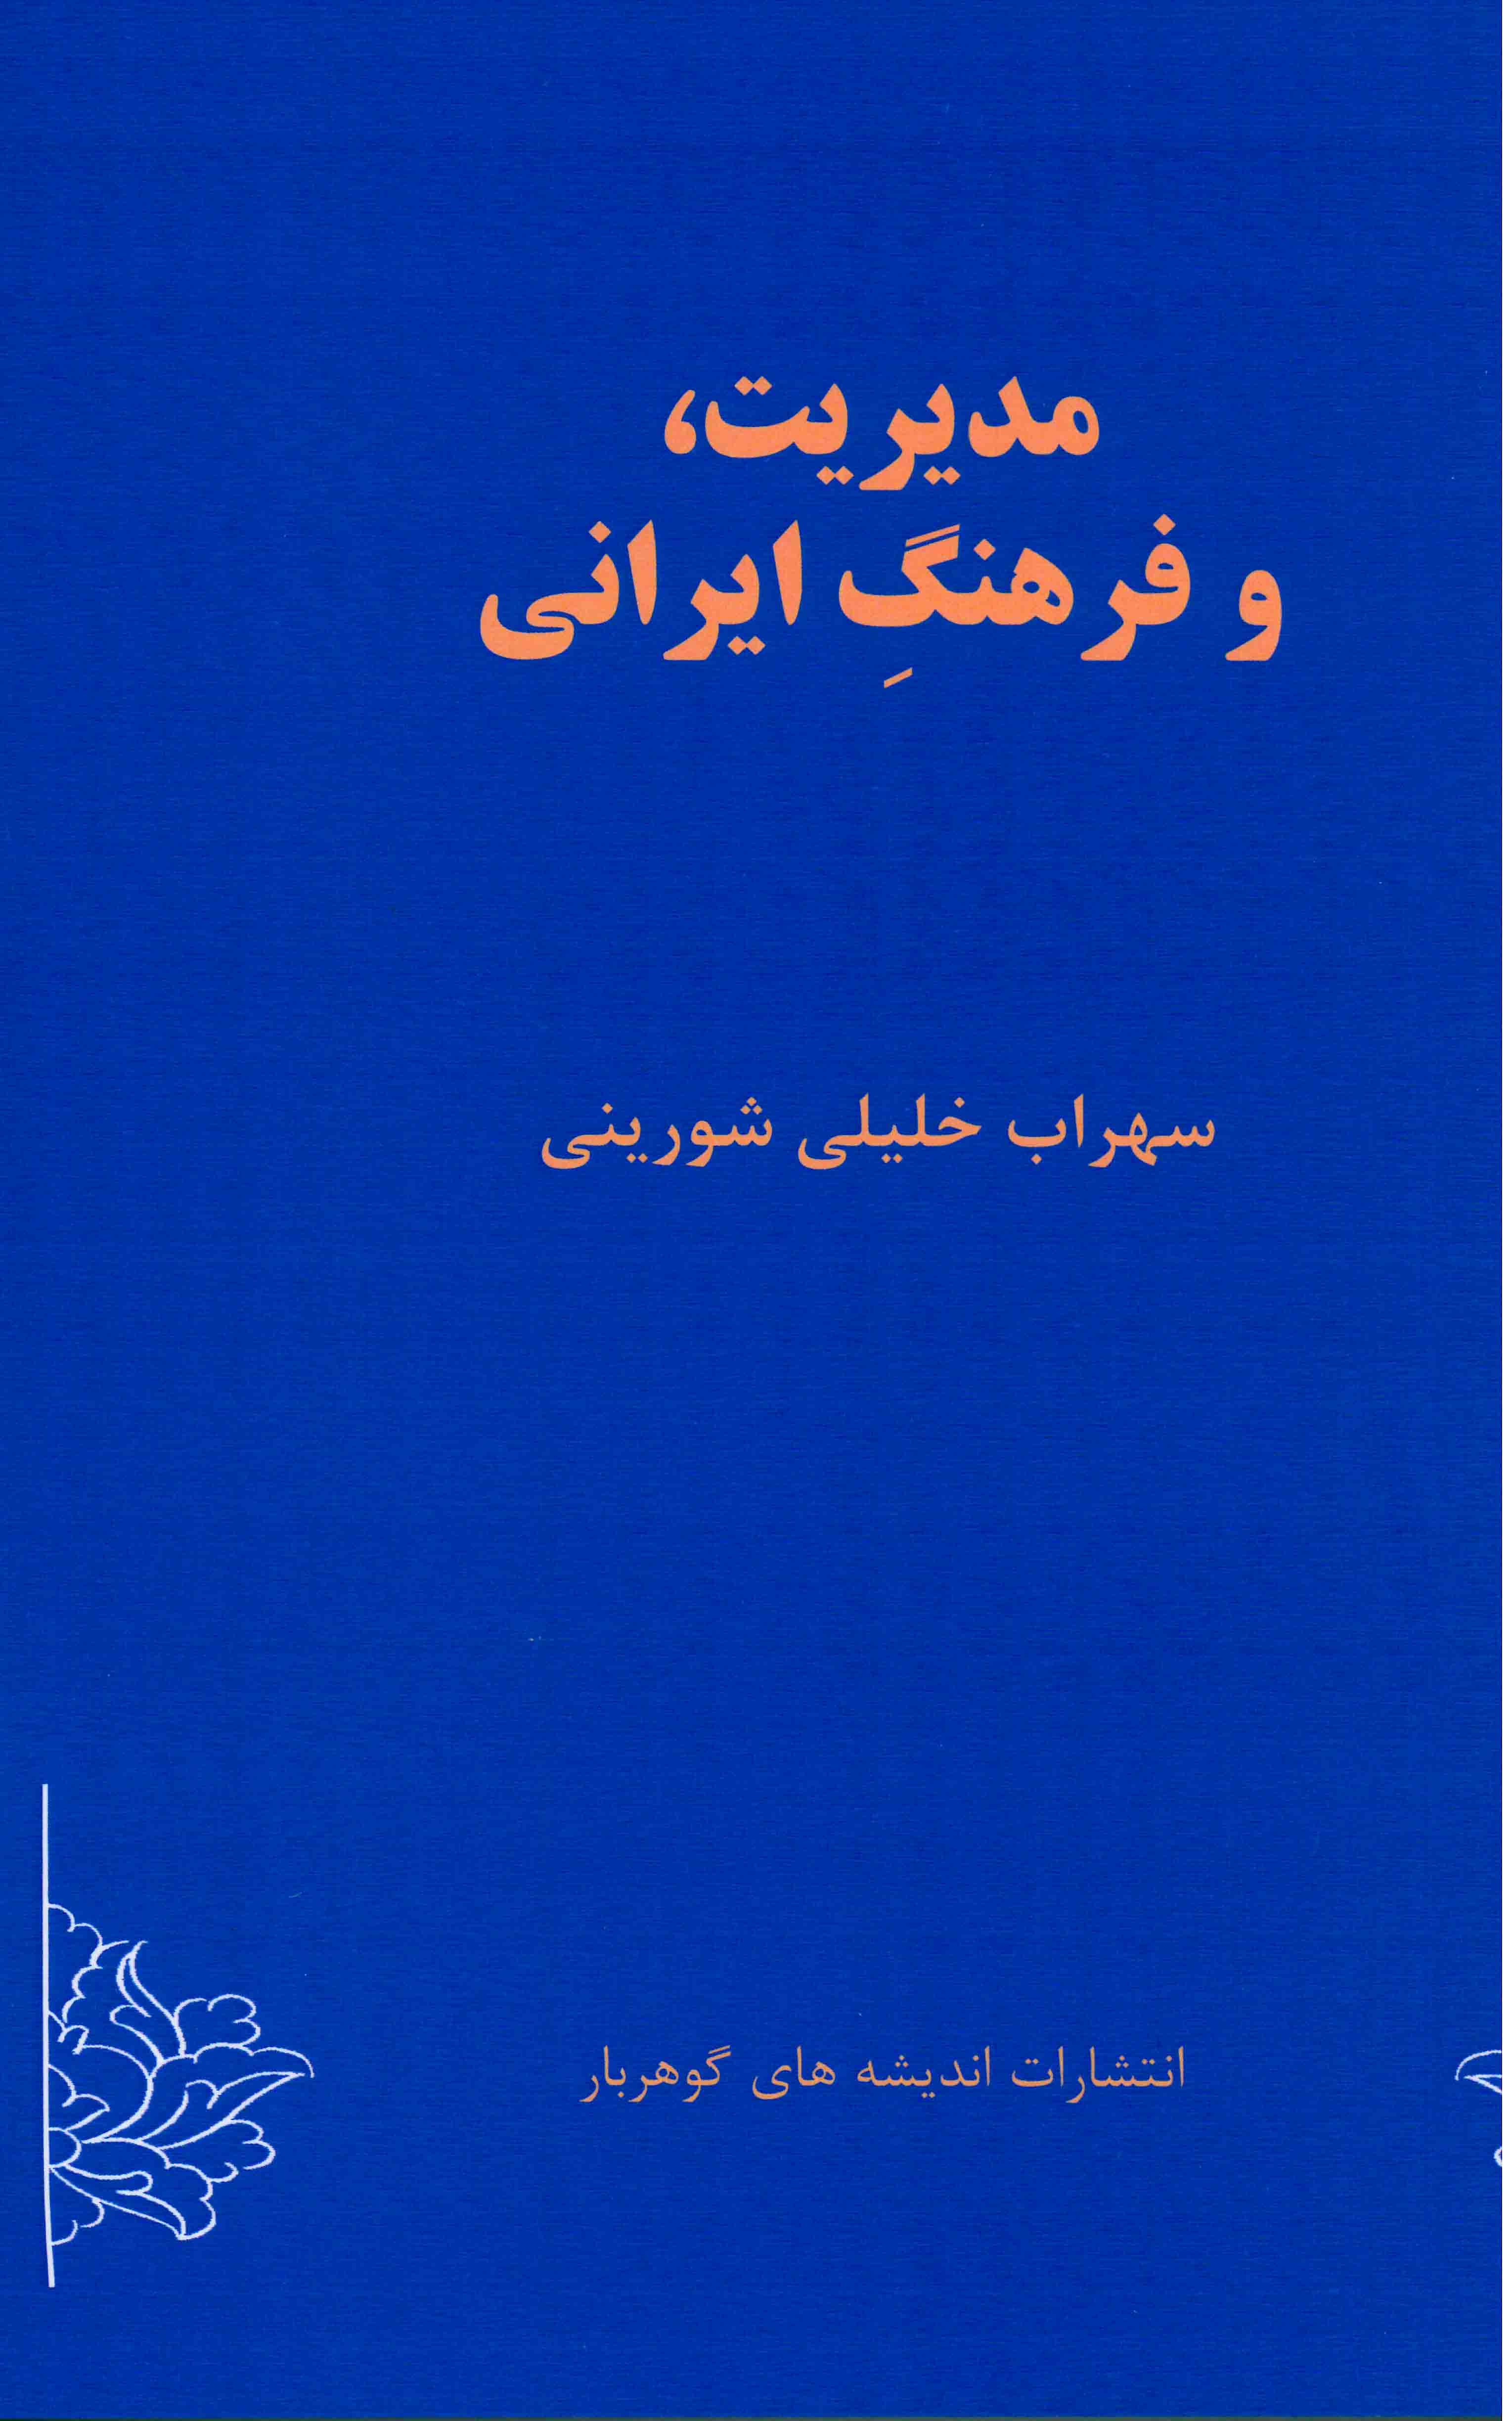 مدیریت و فرهنگ ایرانی